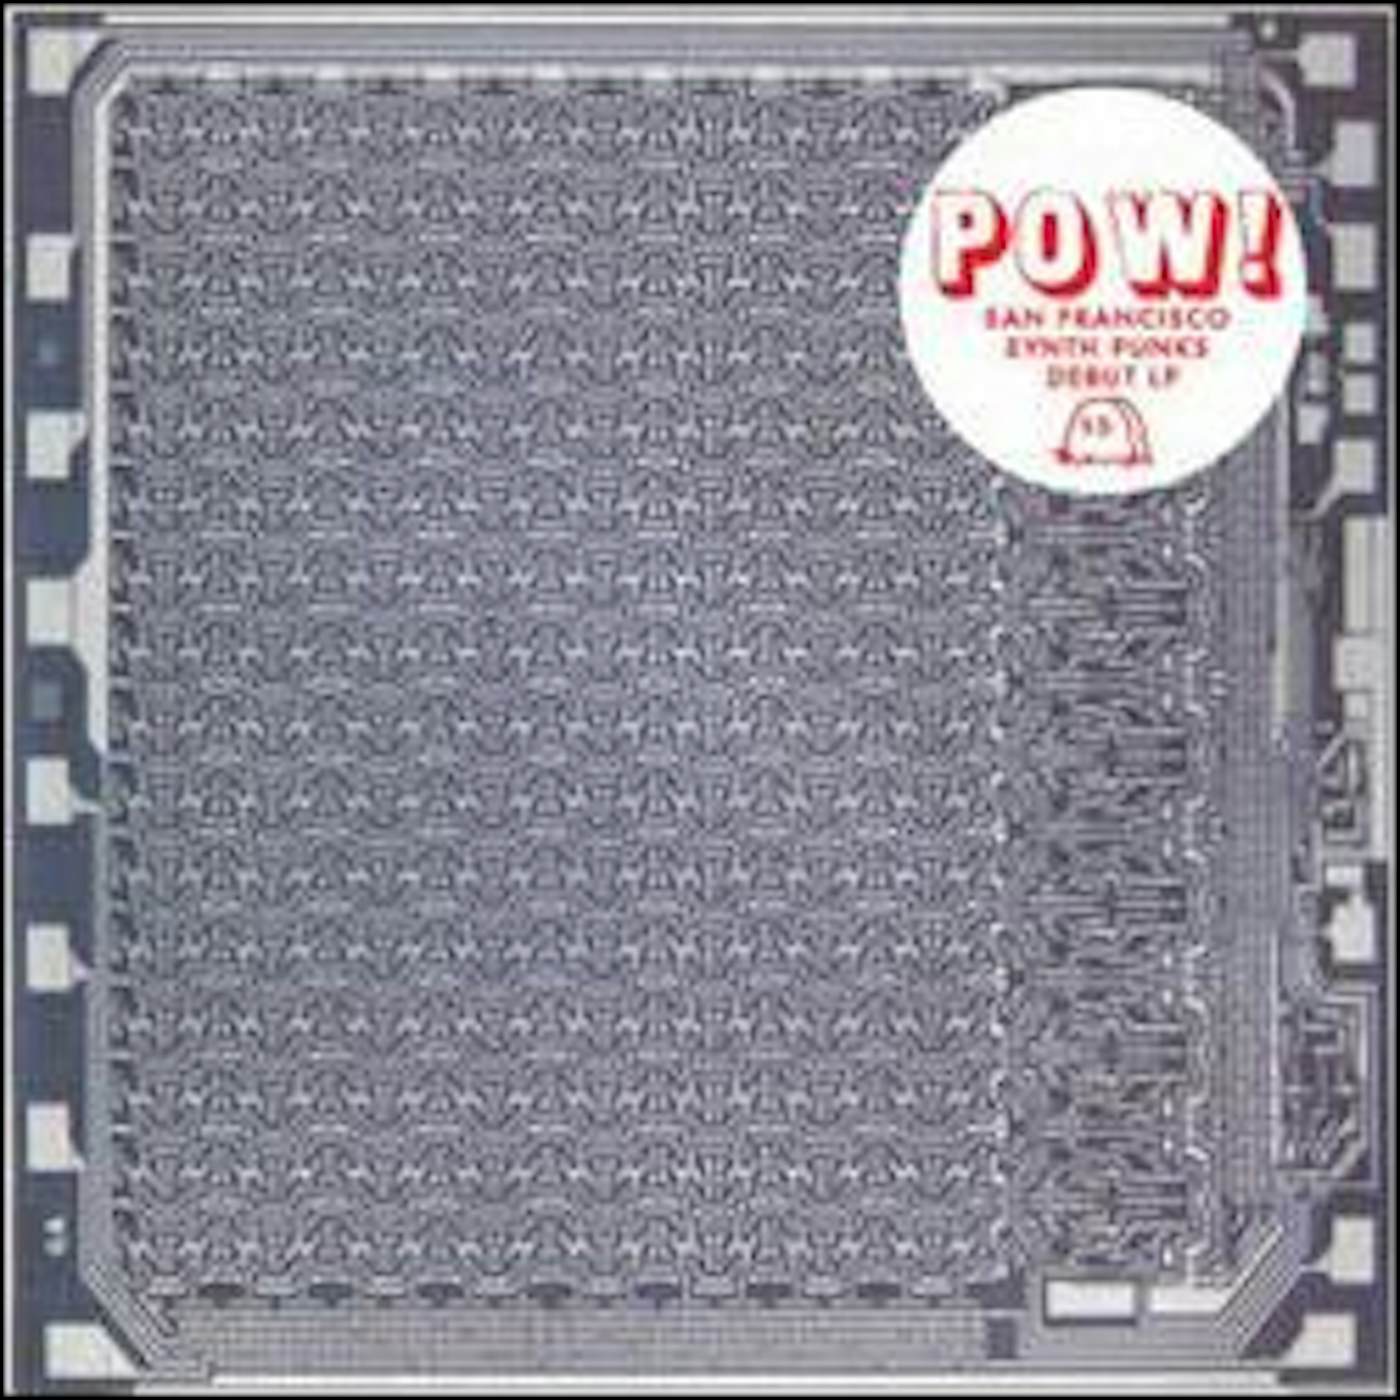 Pow HI-TECH BOOM CD